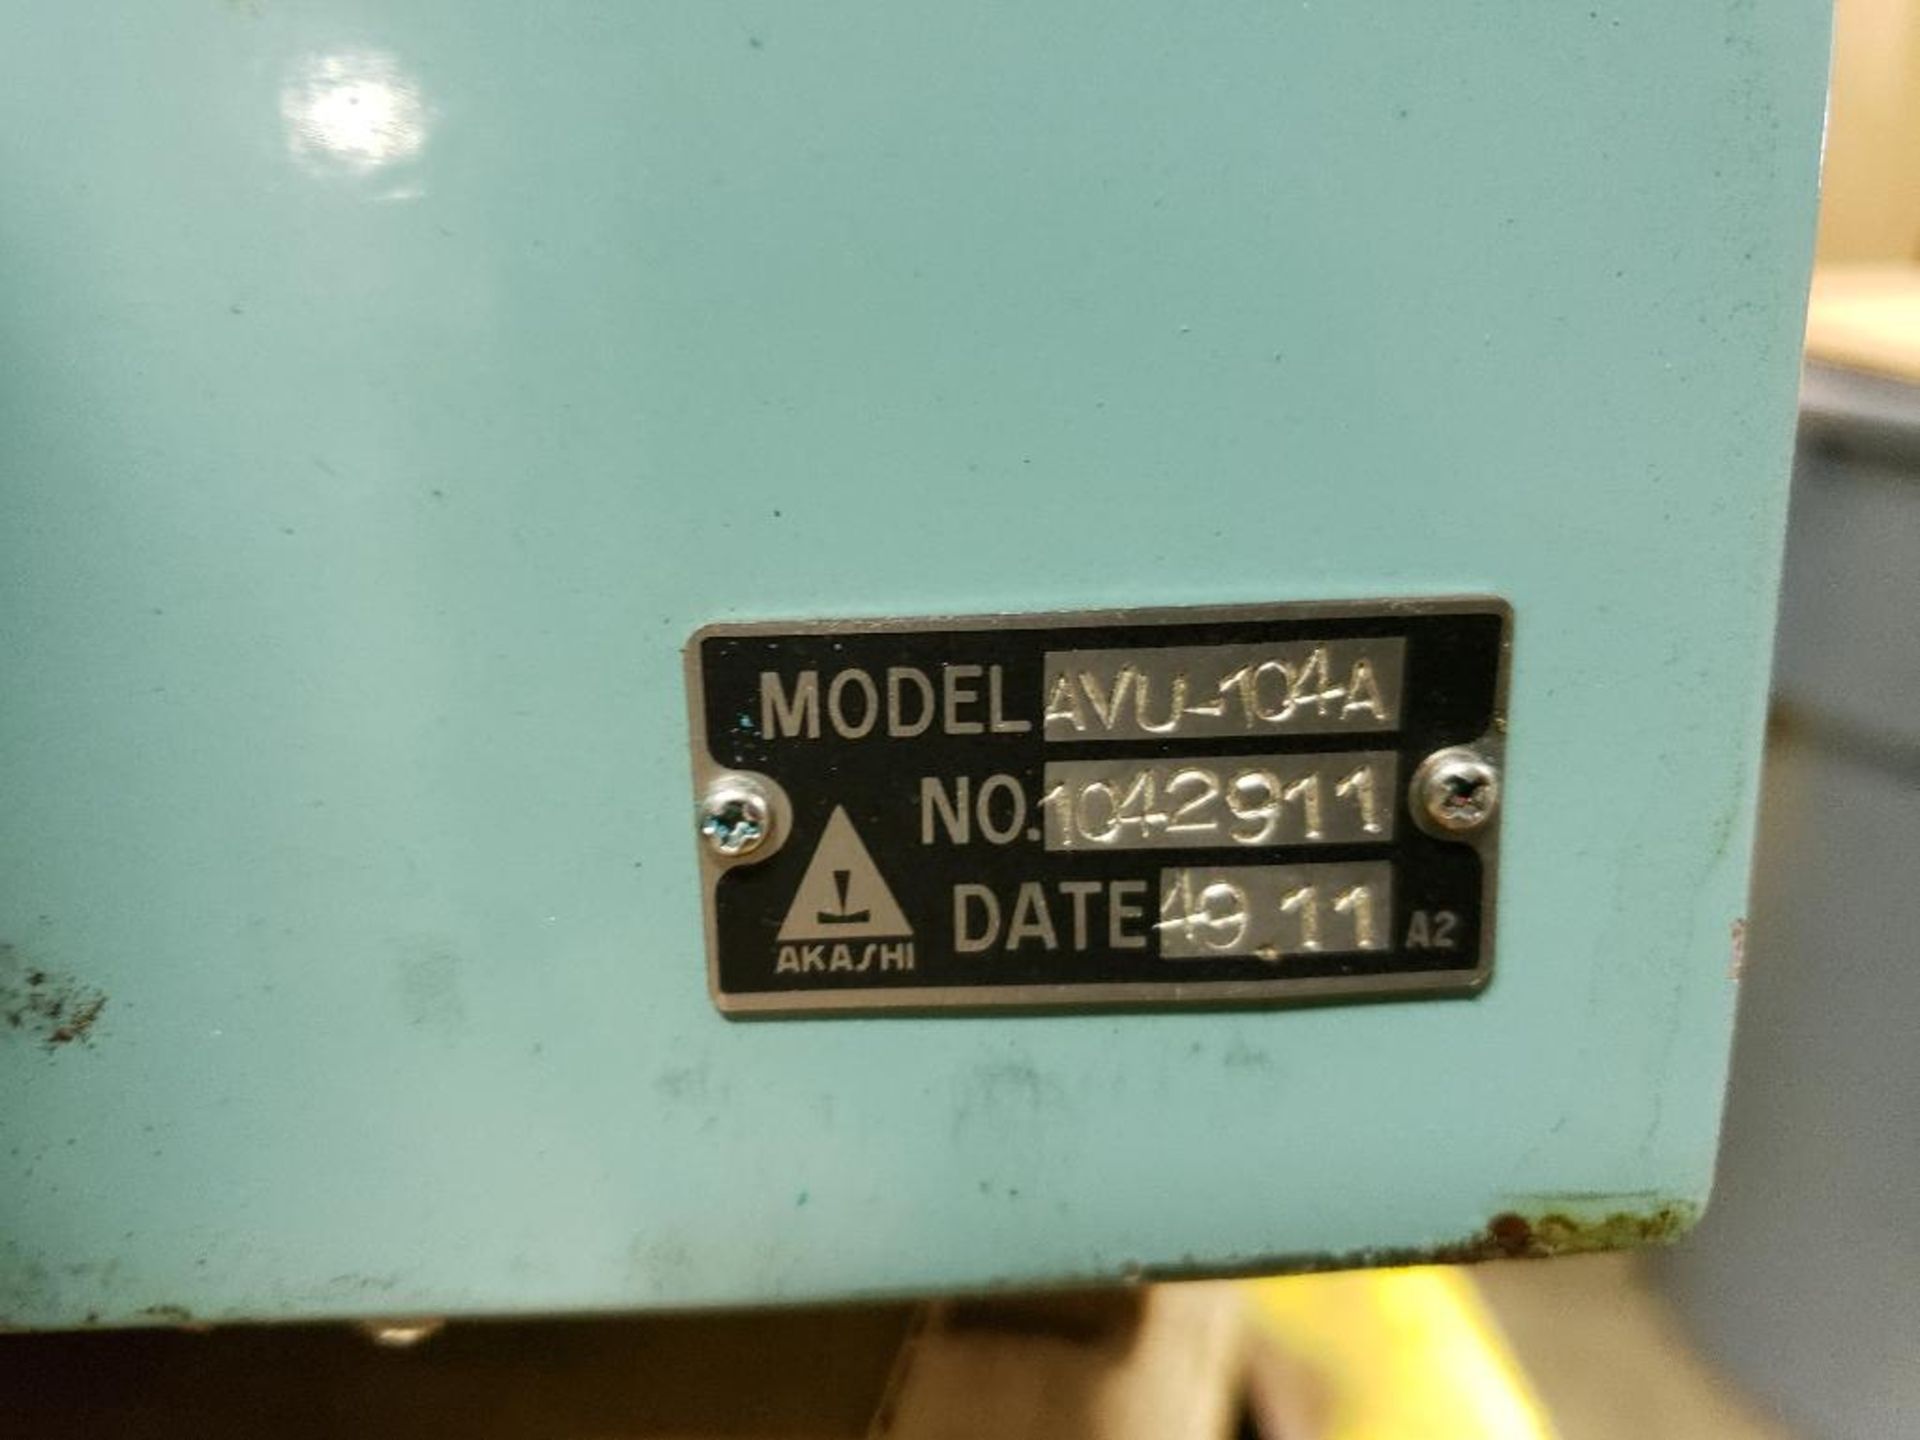 Akashi Televibrometer AVU-104A. - Image 5 of 5